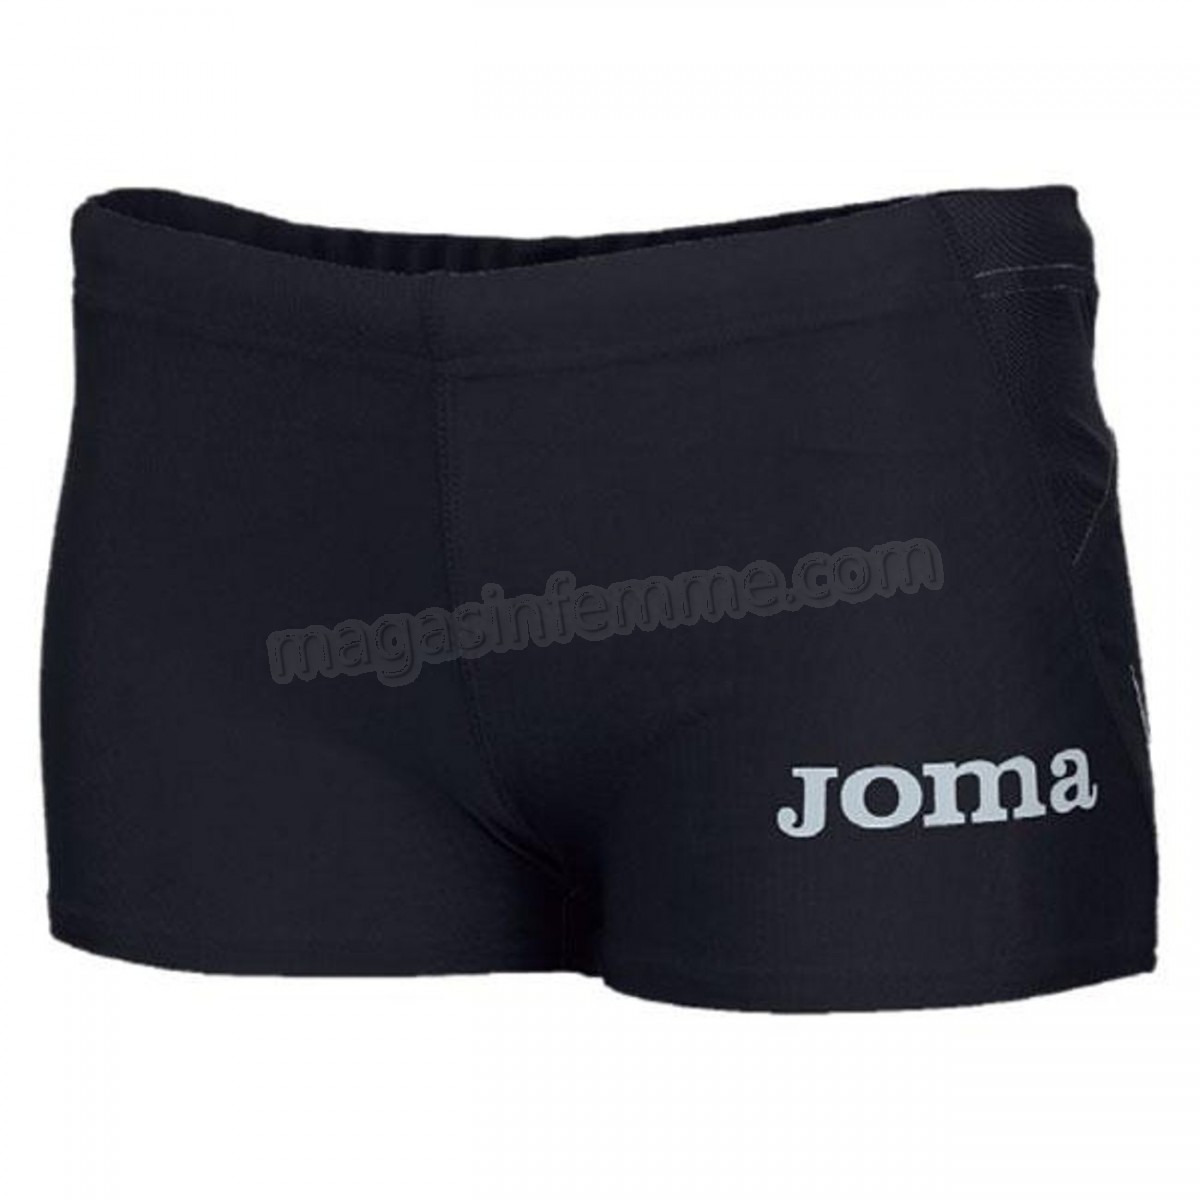 Joma-running femme JOMA Joma Elite Ii Shorts en solde - -0